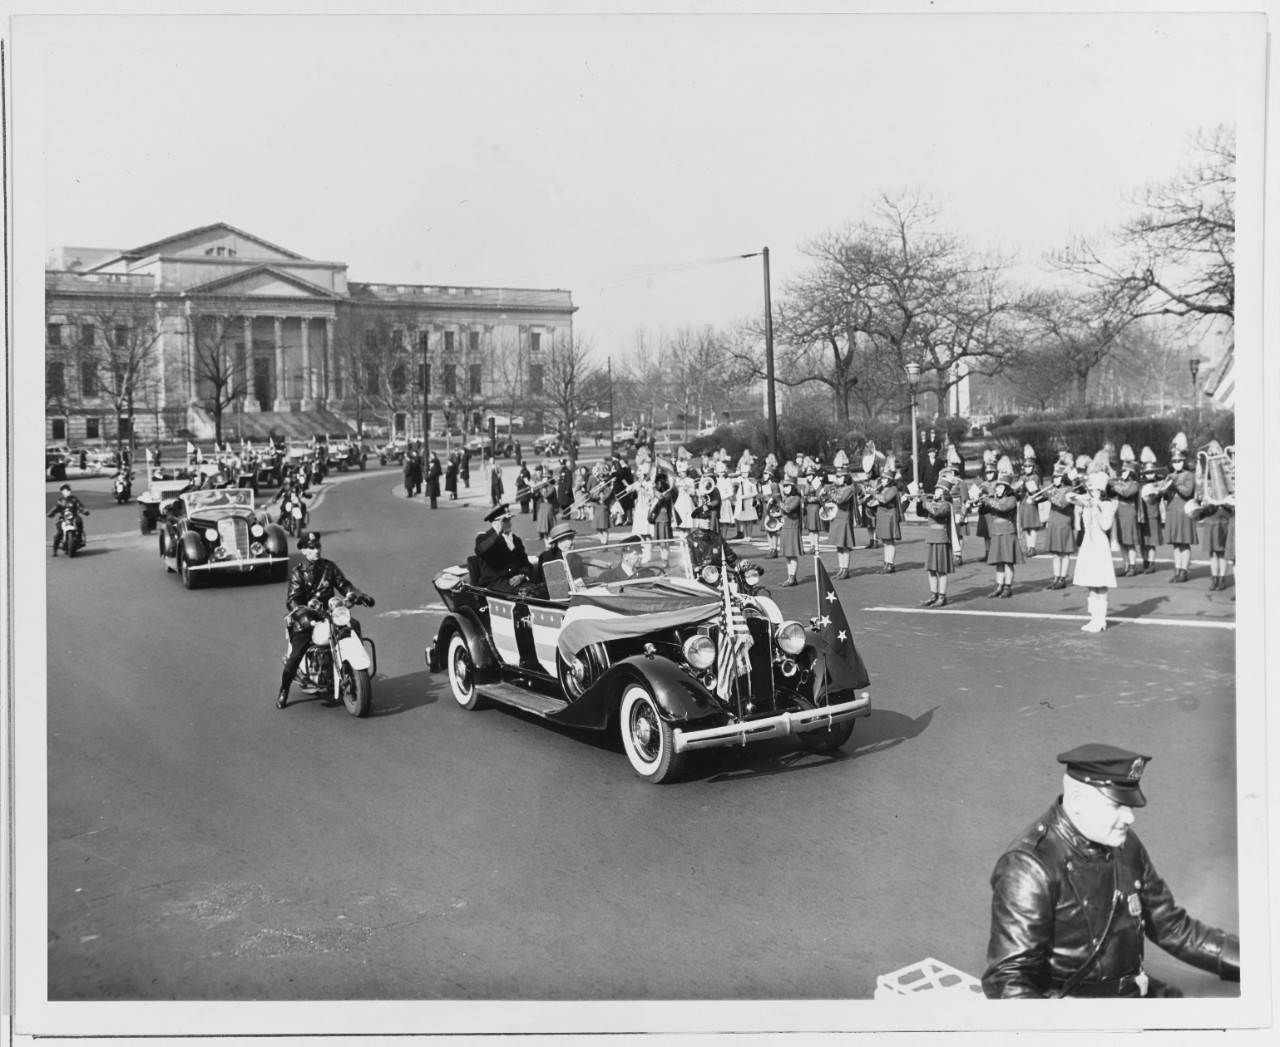 Fleet Admiral Nimitz Rides in a Parade